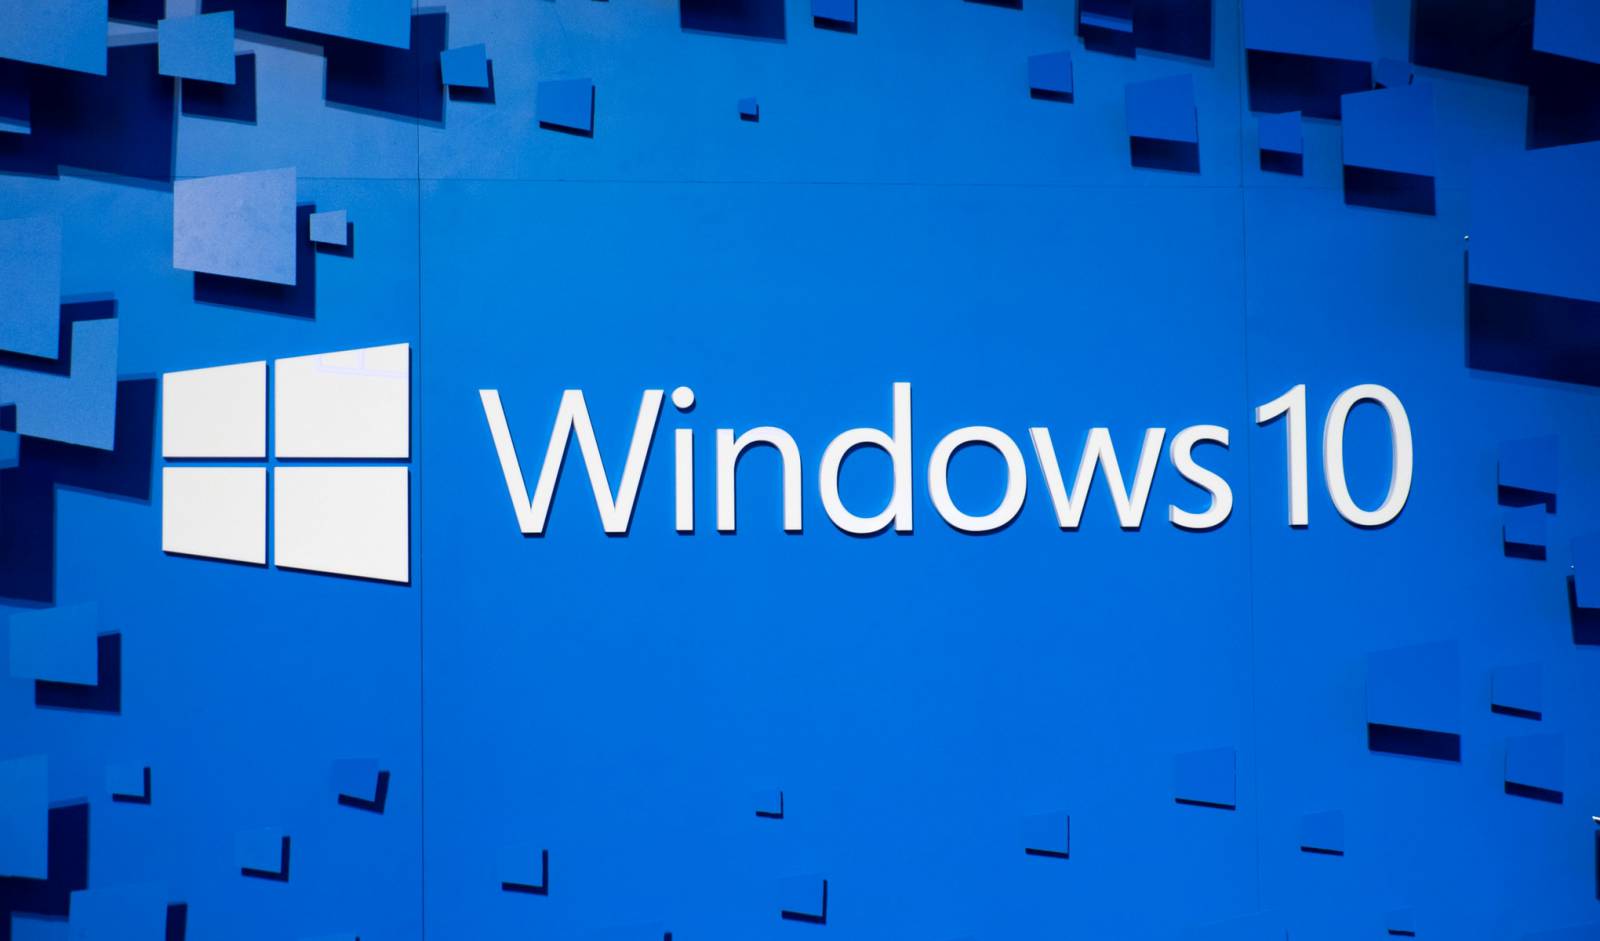 OVERRASK i Windows 10 med en ændring, der overraskede brugere